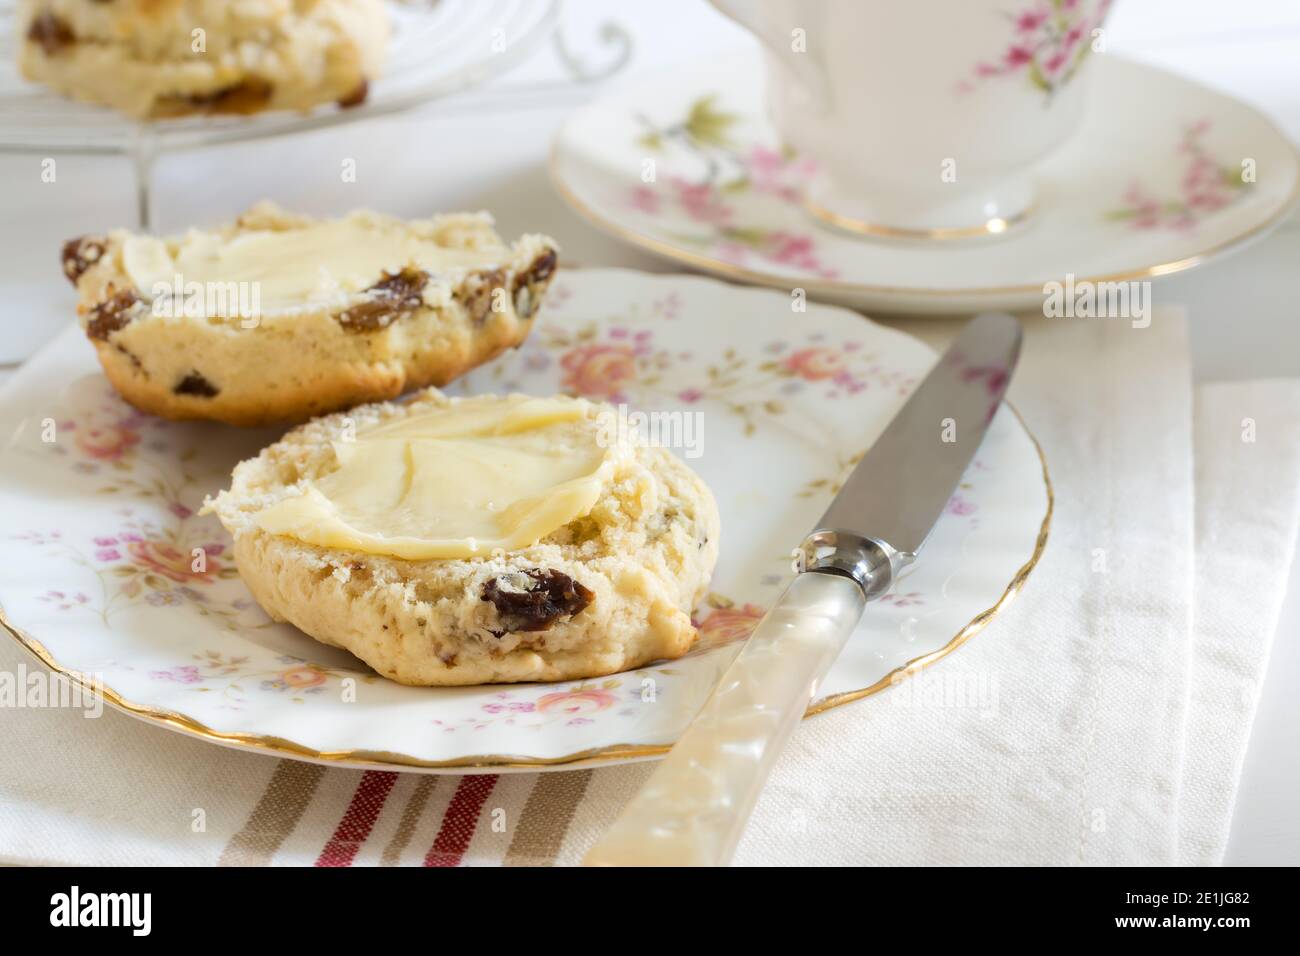 Scones un clásico pastel británico lleno de sultanas y pasas y a menudo se sirve con mantequilla durante el té de la tarde Foto de stock